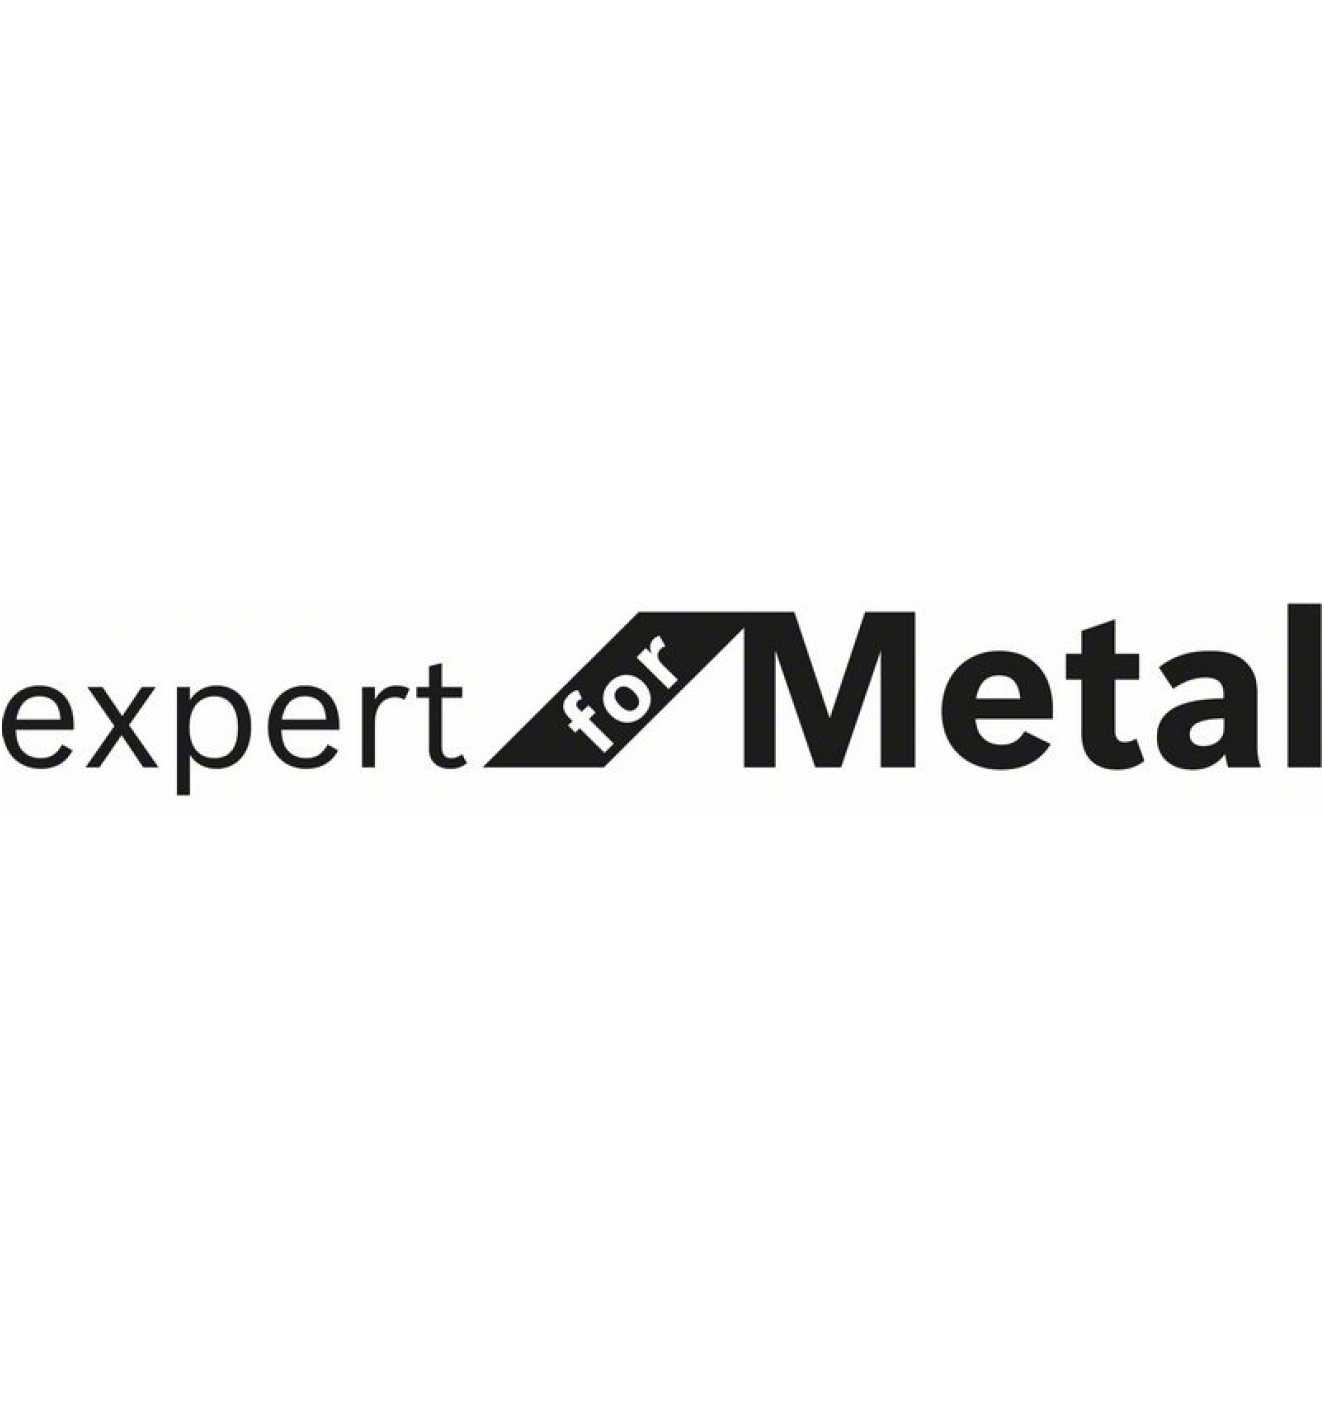 AS 46 Expert Trennscheibe Reidl.de mm Metal, BF, 230 Bosch online kaufen - mm, bei gerade T 1,9 Rapido for